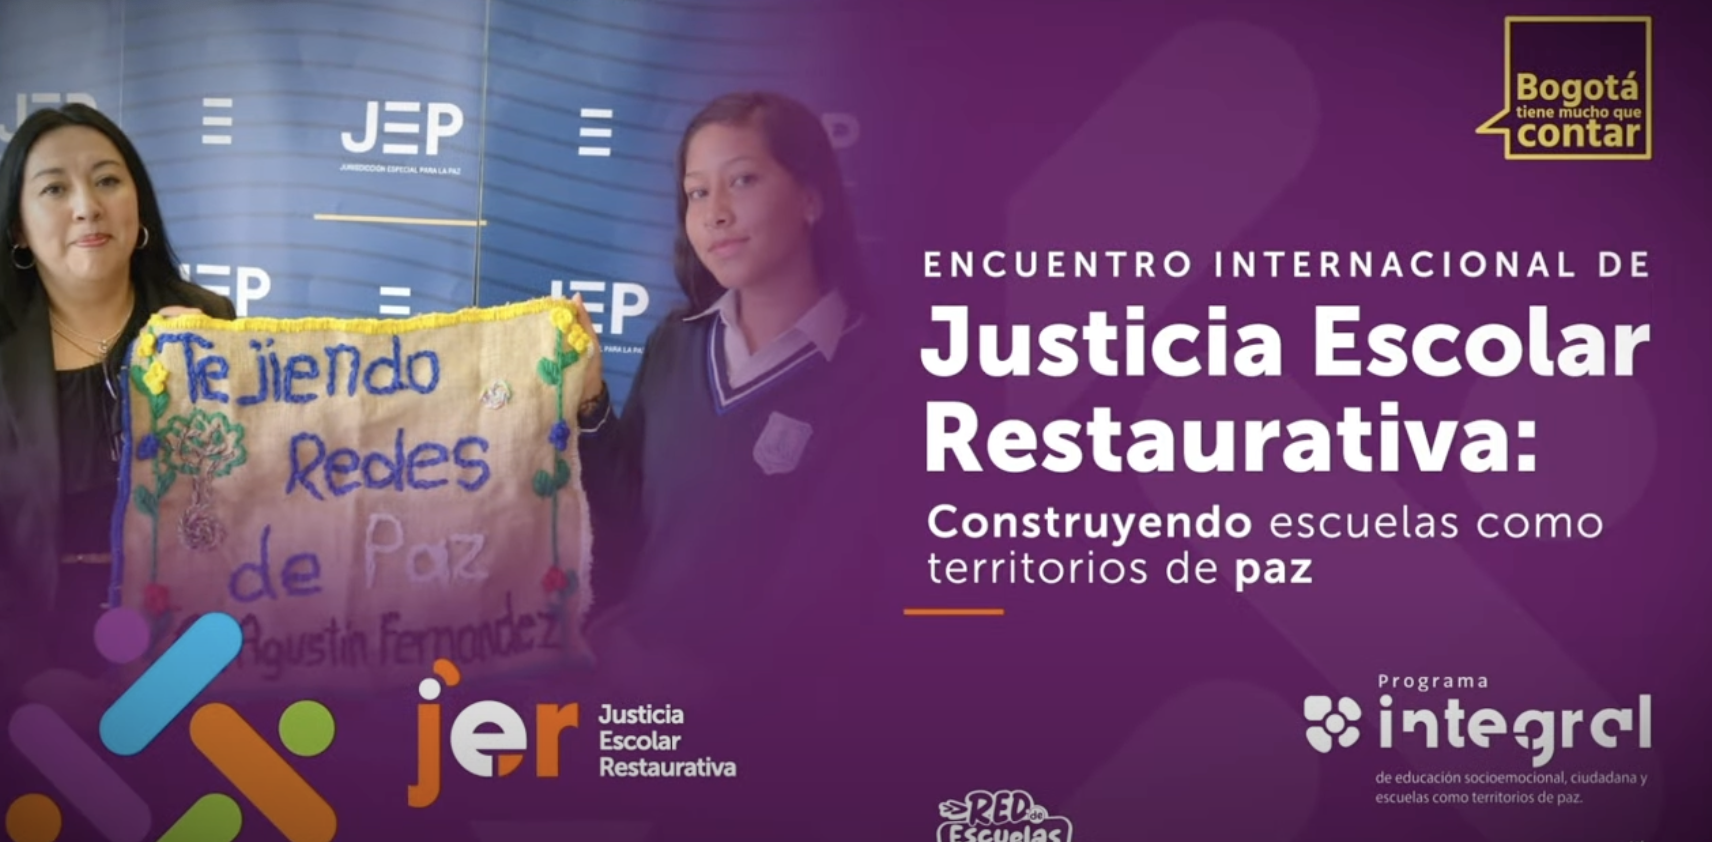 Bogotá se prepara para el Encuentro Internacional de Justicia Escolar Restaurativa